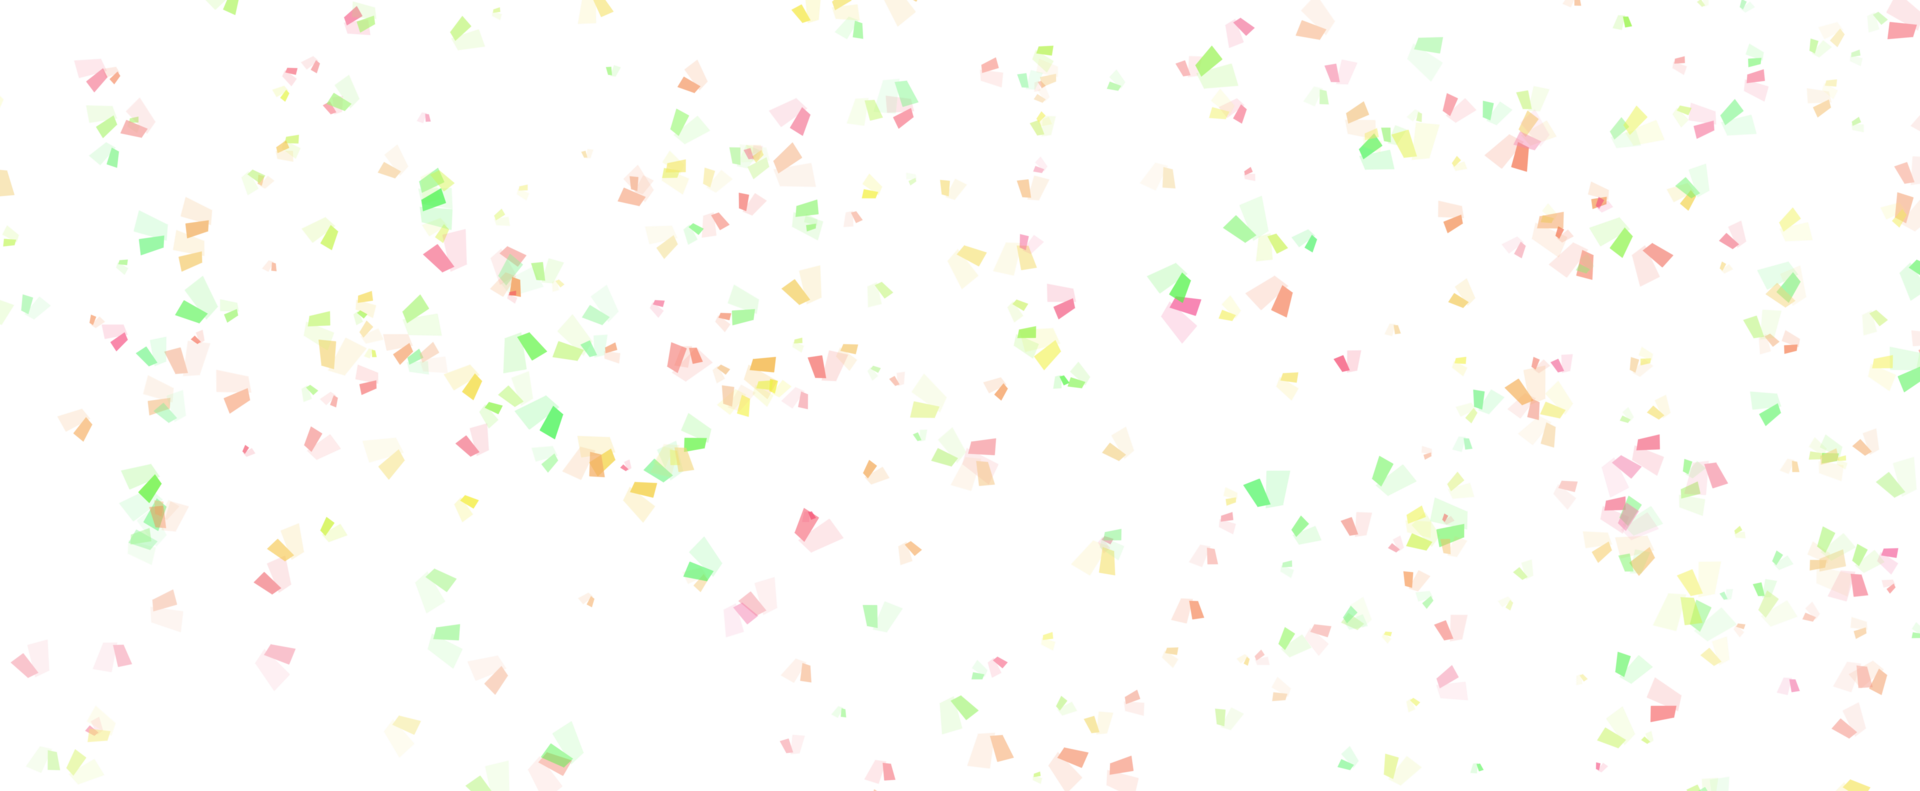 fondo festivo de confeti redondo de memphis en azul cian, rosa y amarillo. patrón infantil y círculos de confeti bokeh decoración fondo de vacaciones. png